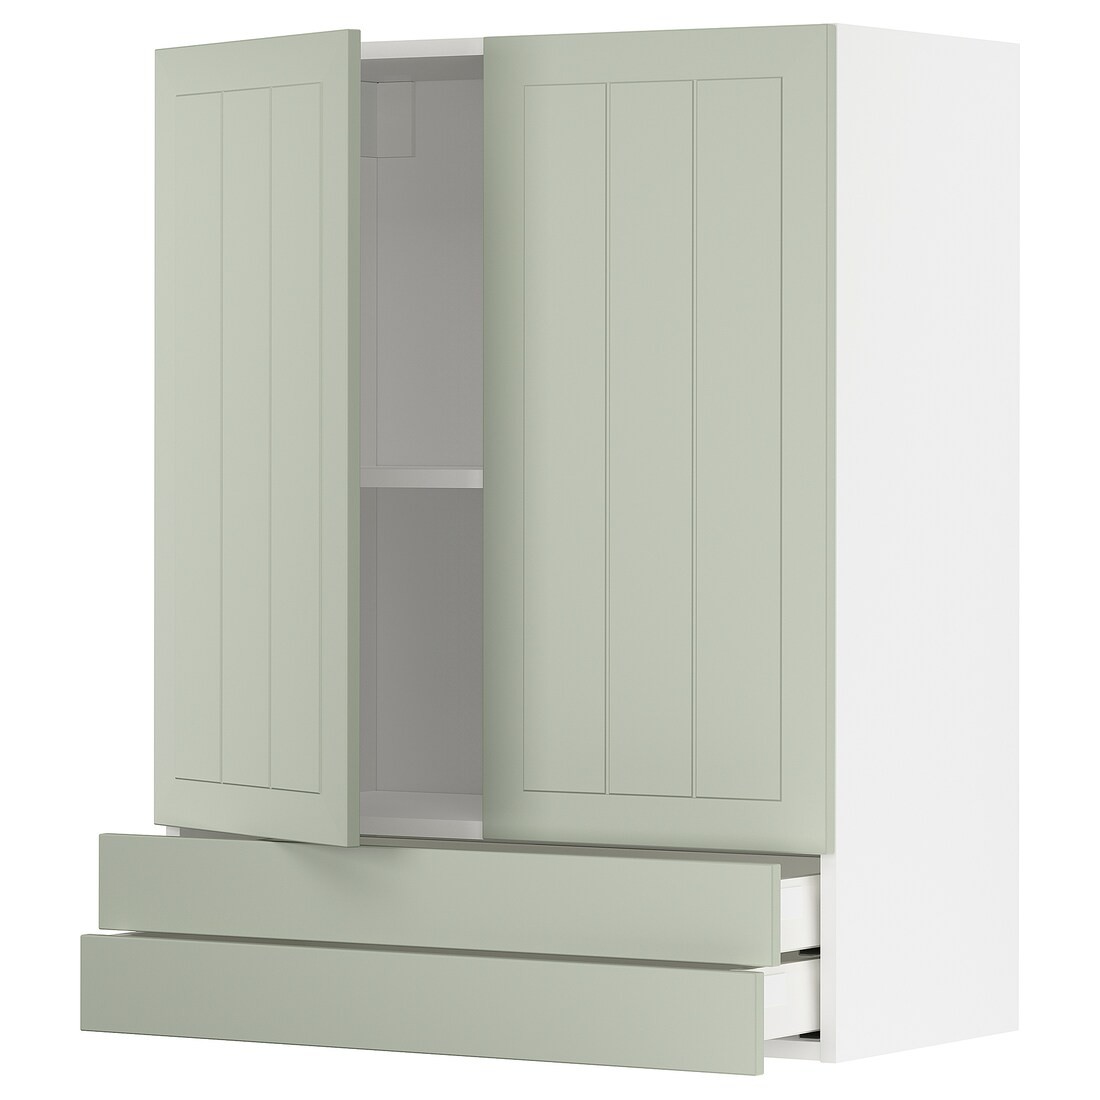 METOD МЕТОД / MAXIMERA МАКСИМЕРА Навесной шкаф / 2 дверцы / 2 ящика, белый / Stensund светло-зеленый, 80x100 см